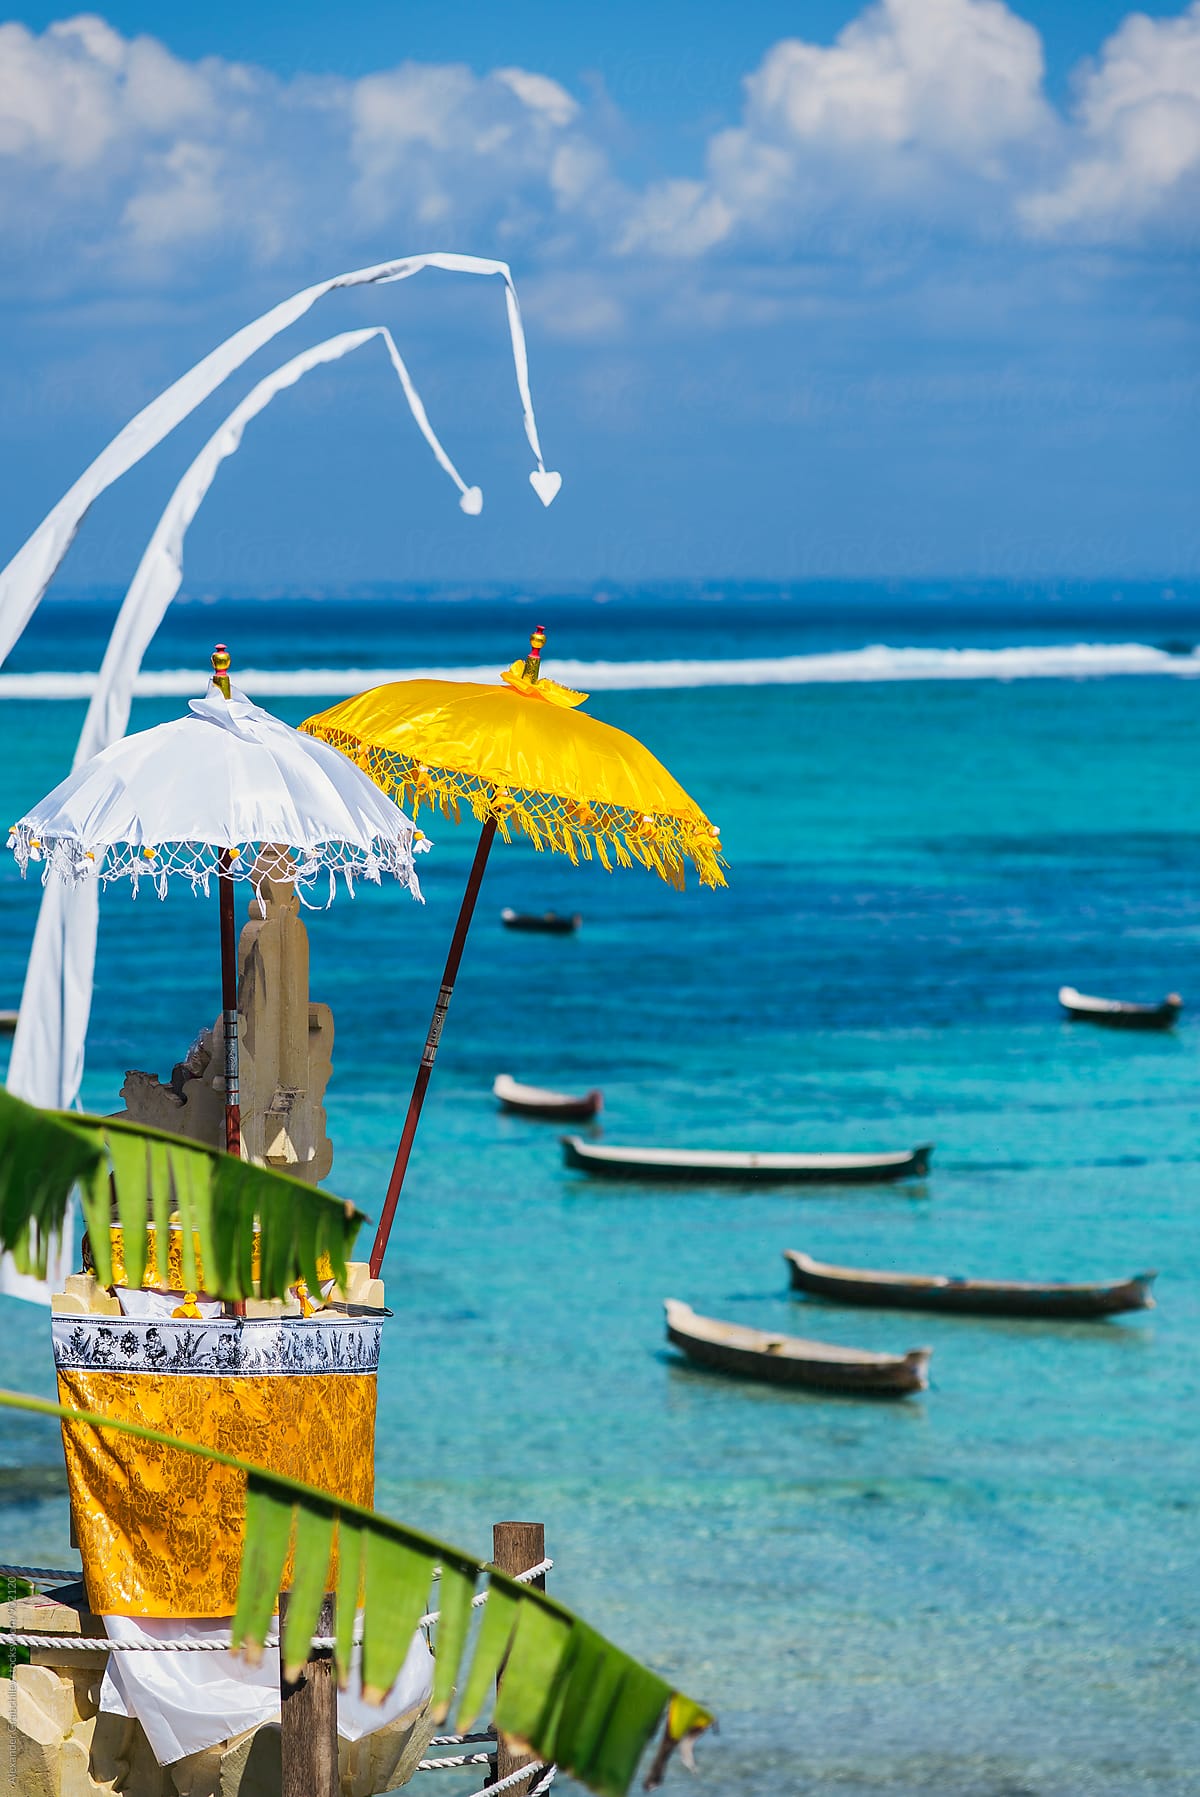 Tropical Blue Ocean At Bali Island